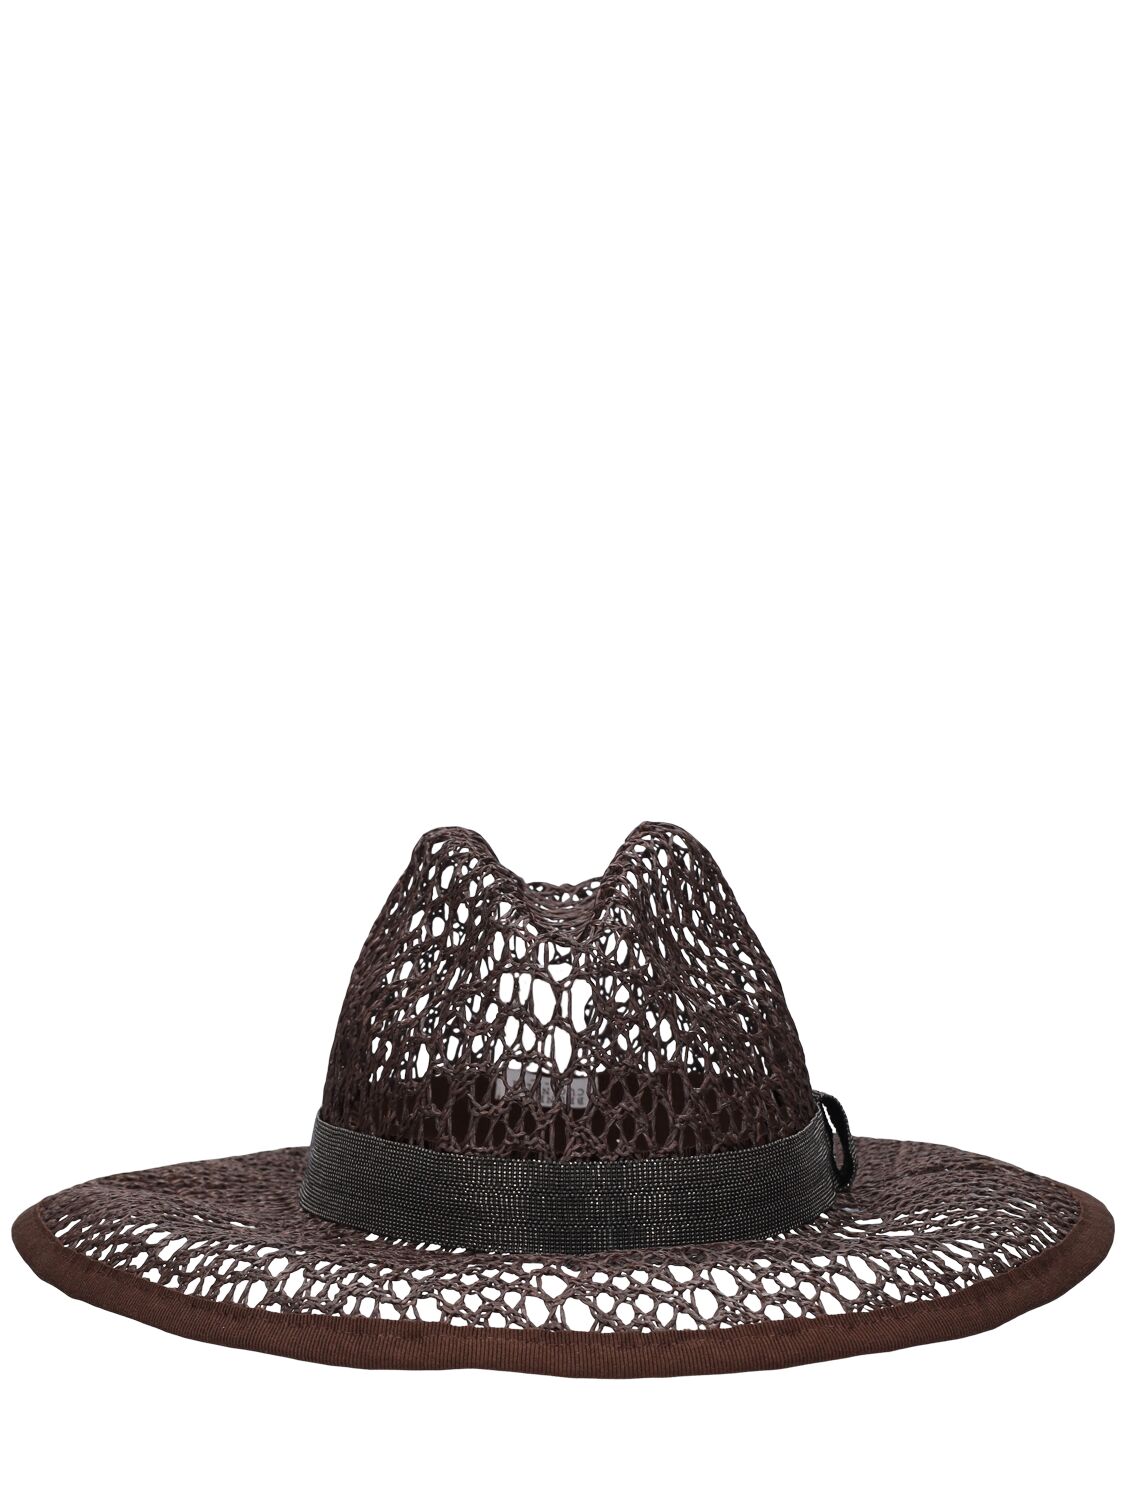 Image of Raffia Effect Brimmed Hat